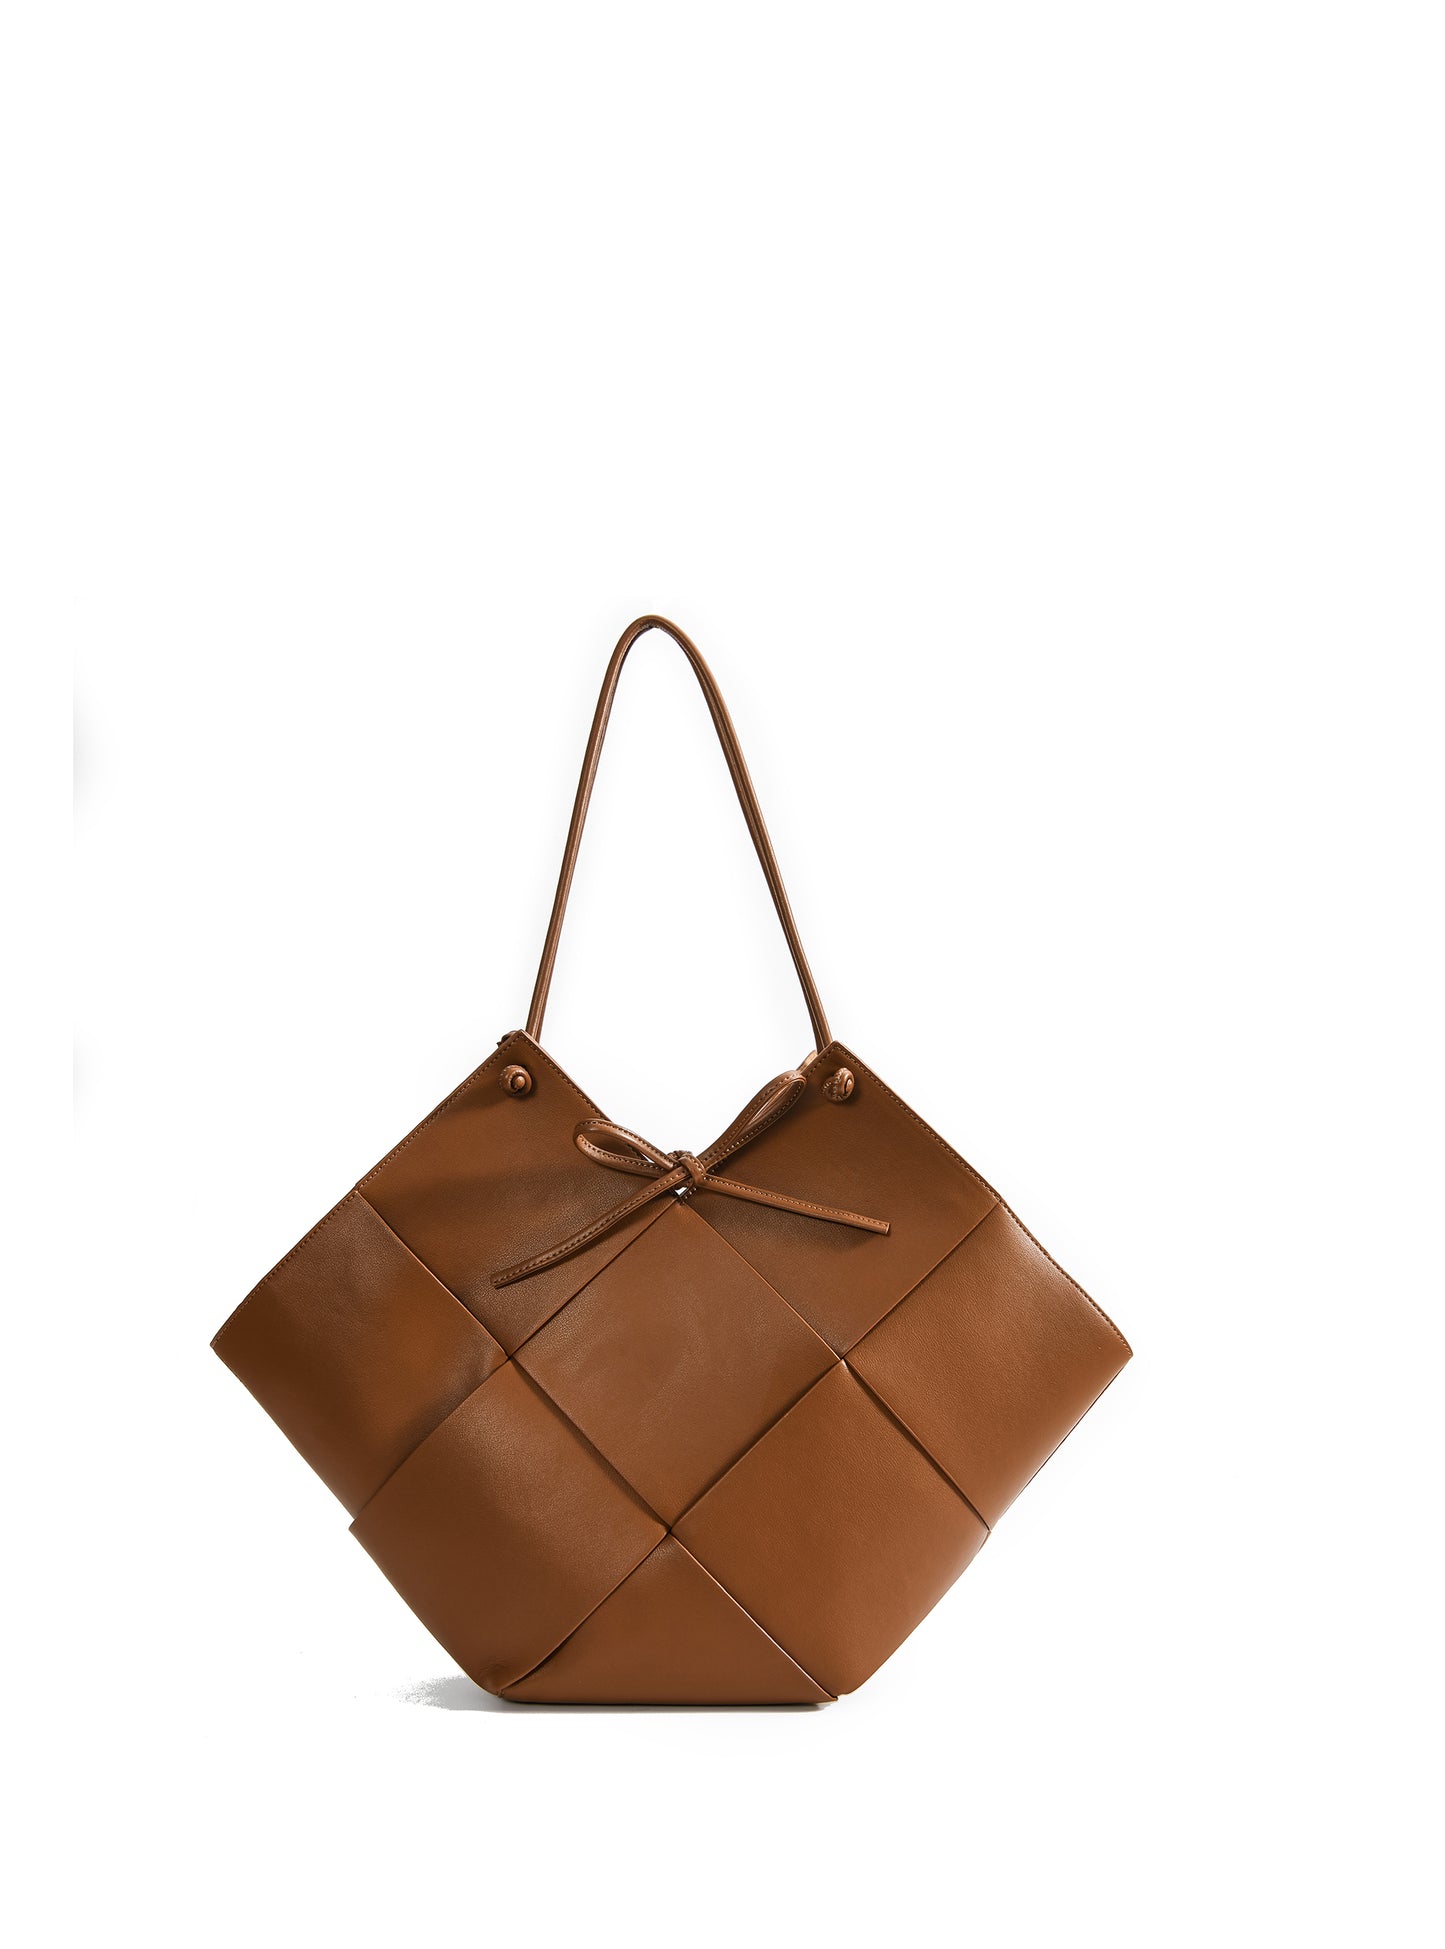 Taylor Contexture Leather Bag, Caramel